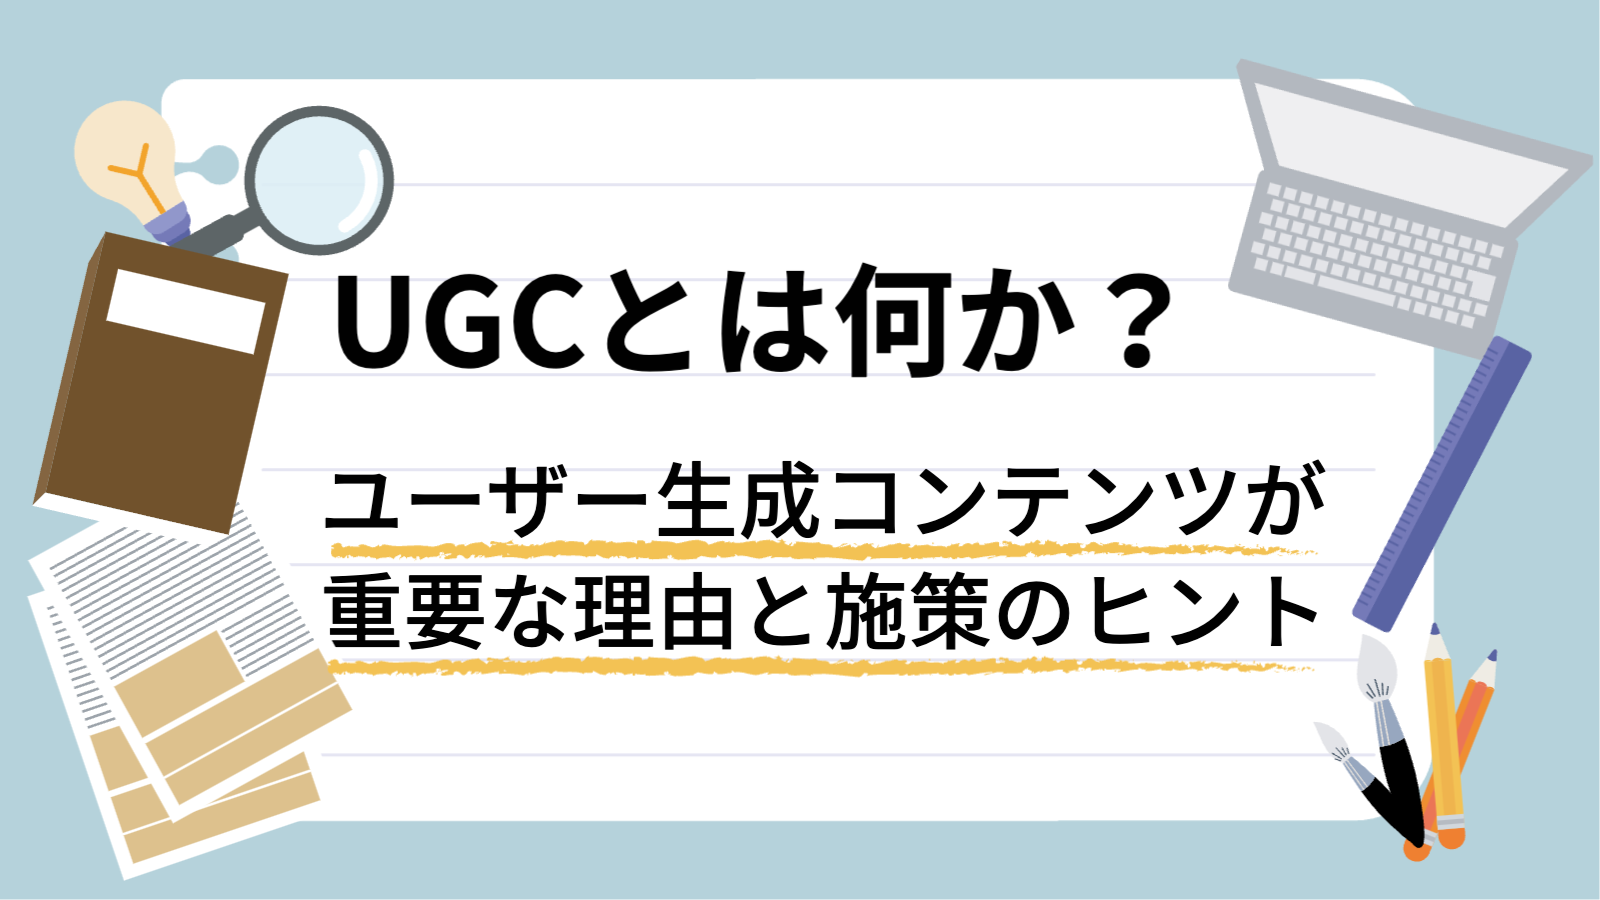 UGCとは何か？ユーザー生成コンテンツが重要な理由と施策のヒント